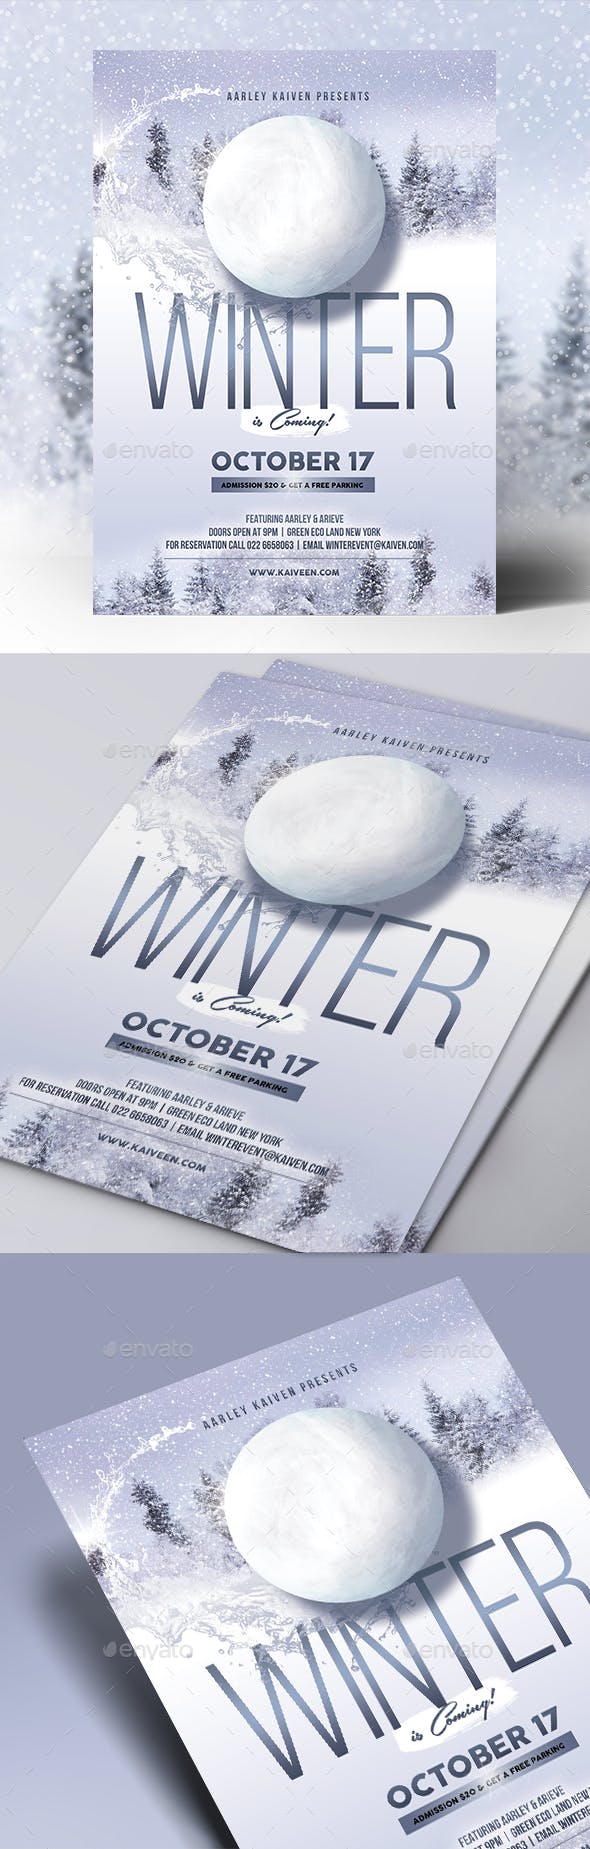 冬季活动宣传海报模板 Winter Event Flyer [psd]插图